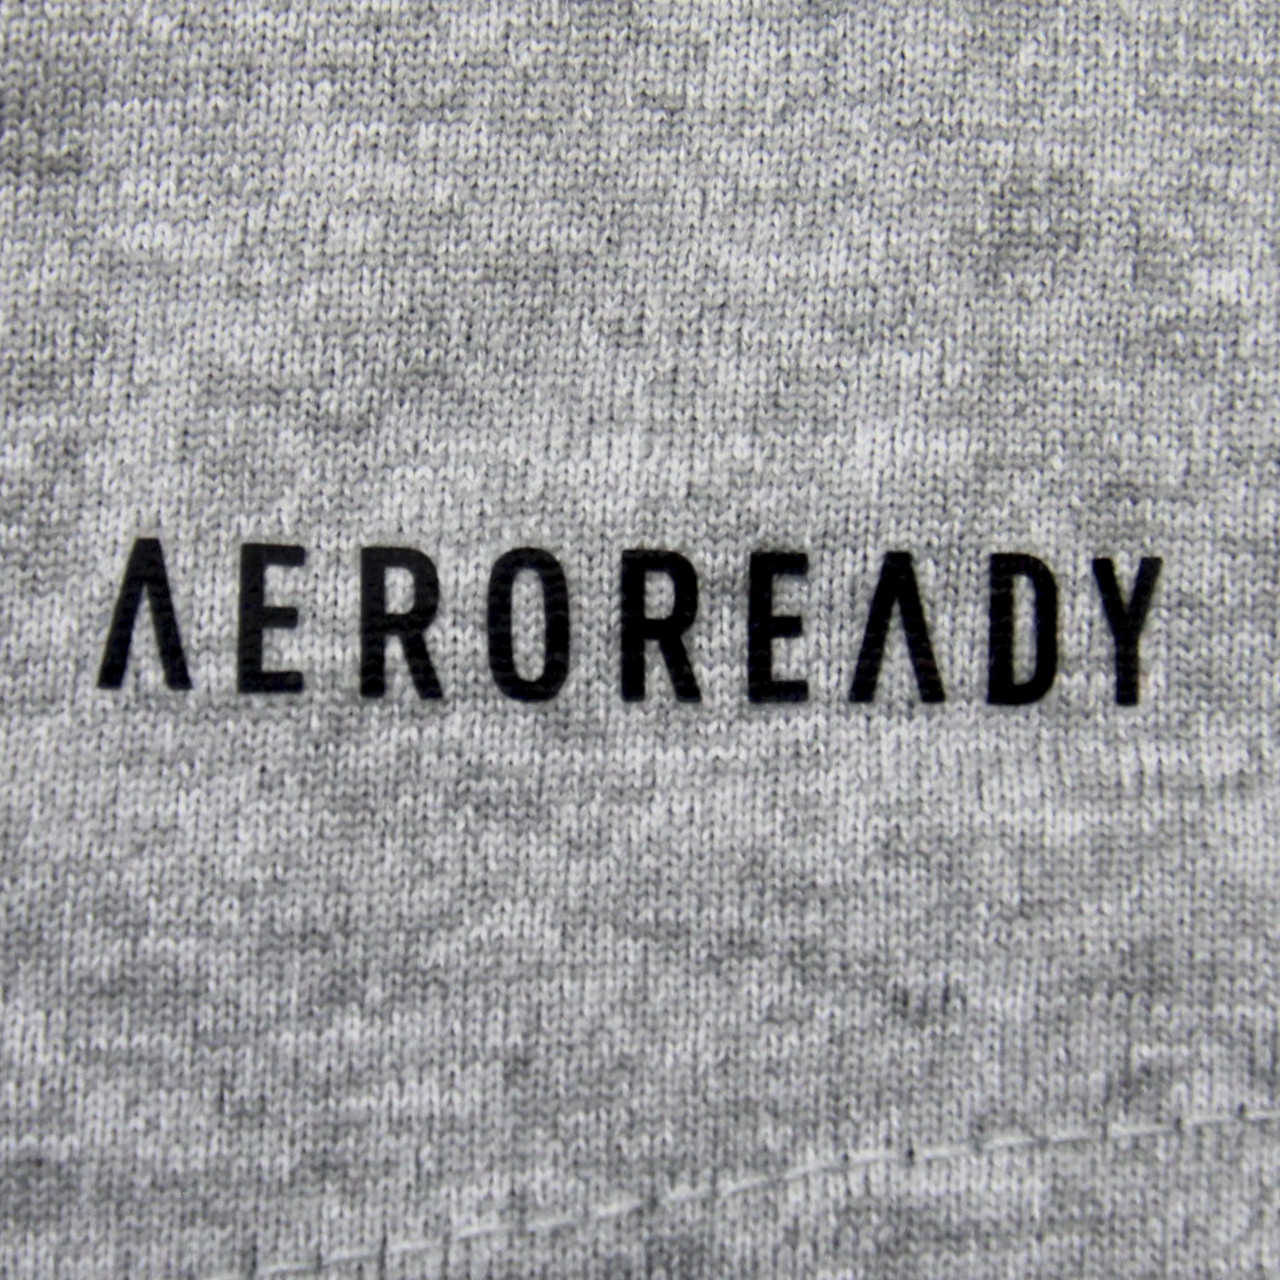 Aeroready